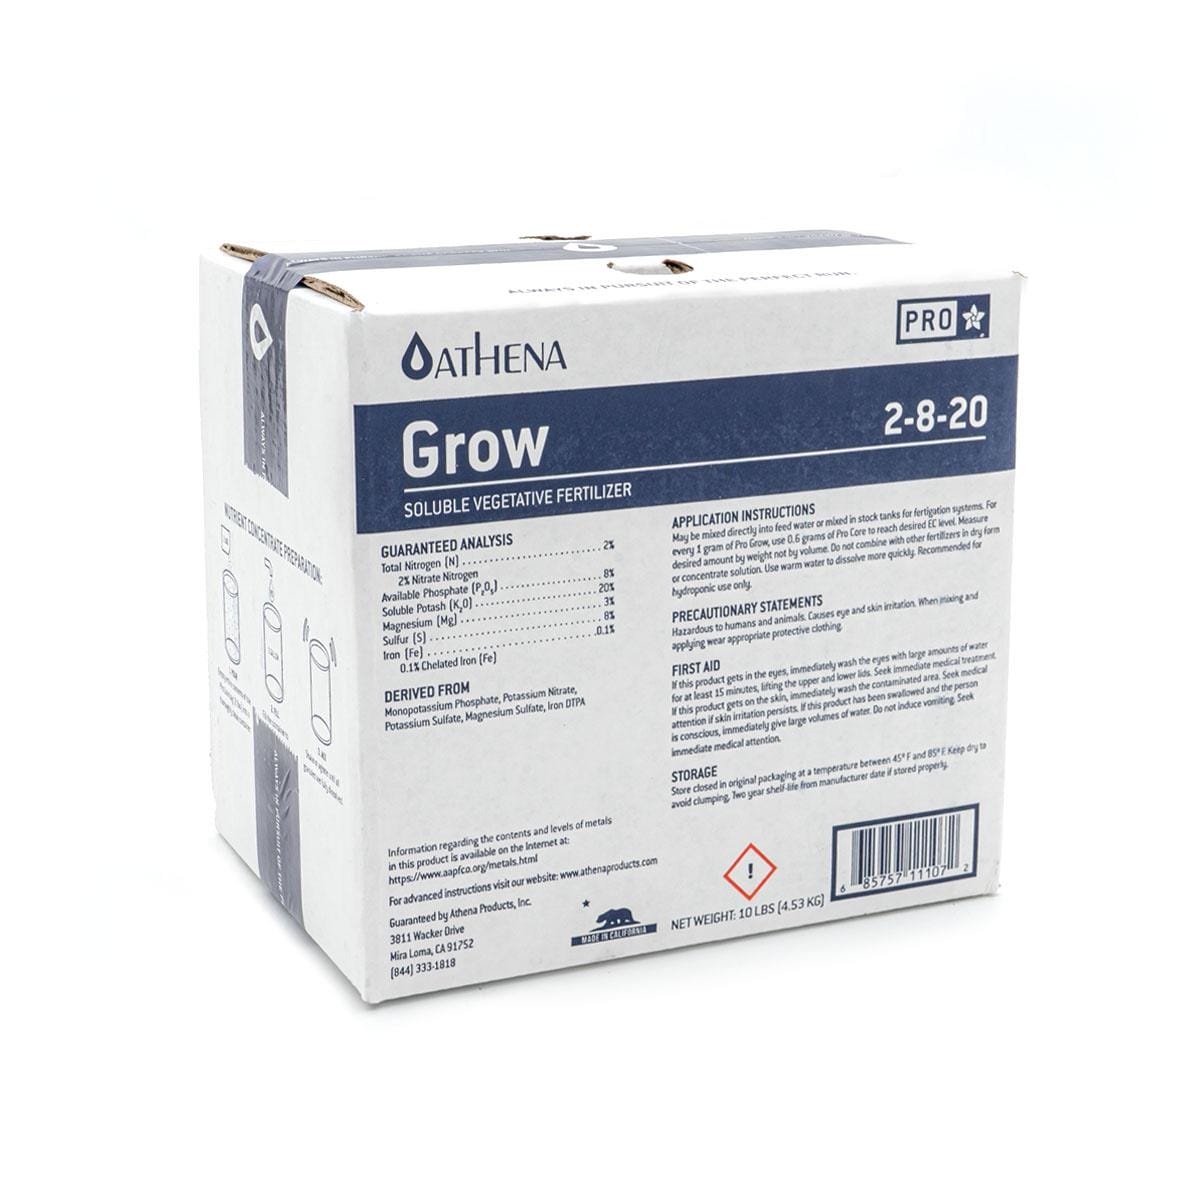 Athena Pro Grow 10lb Box